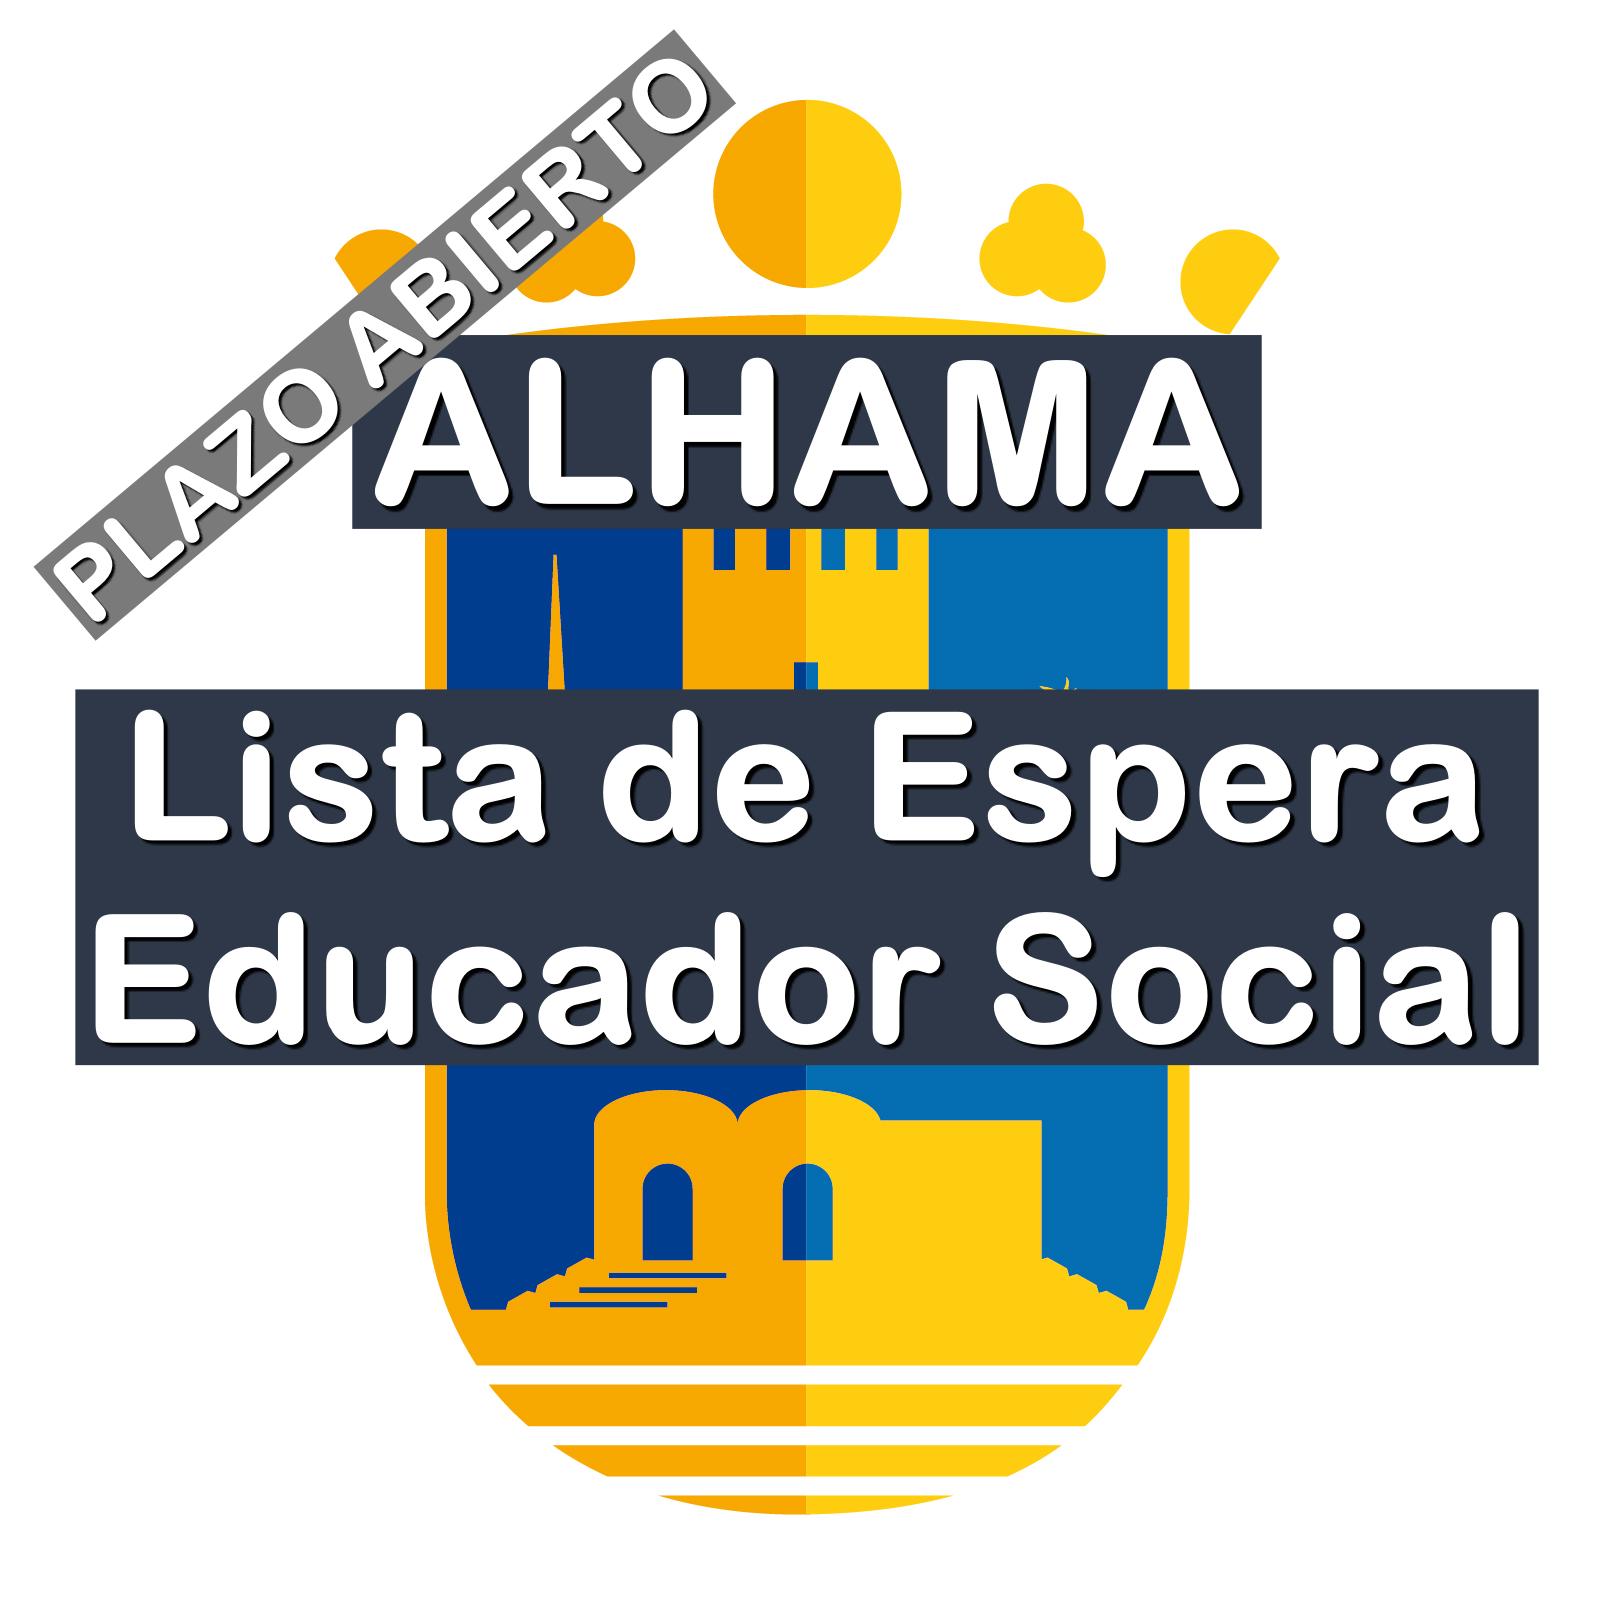 Lista de Espera Educador Social en Alhama